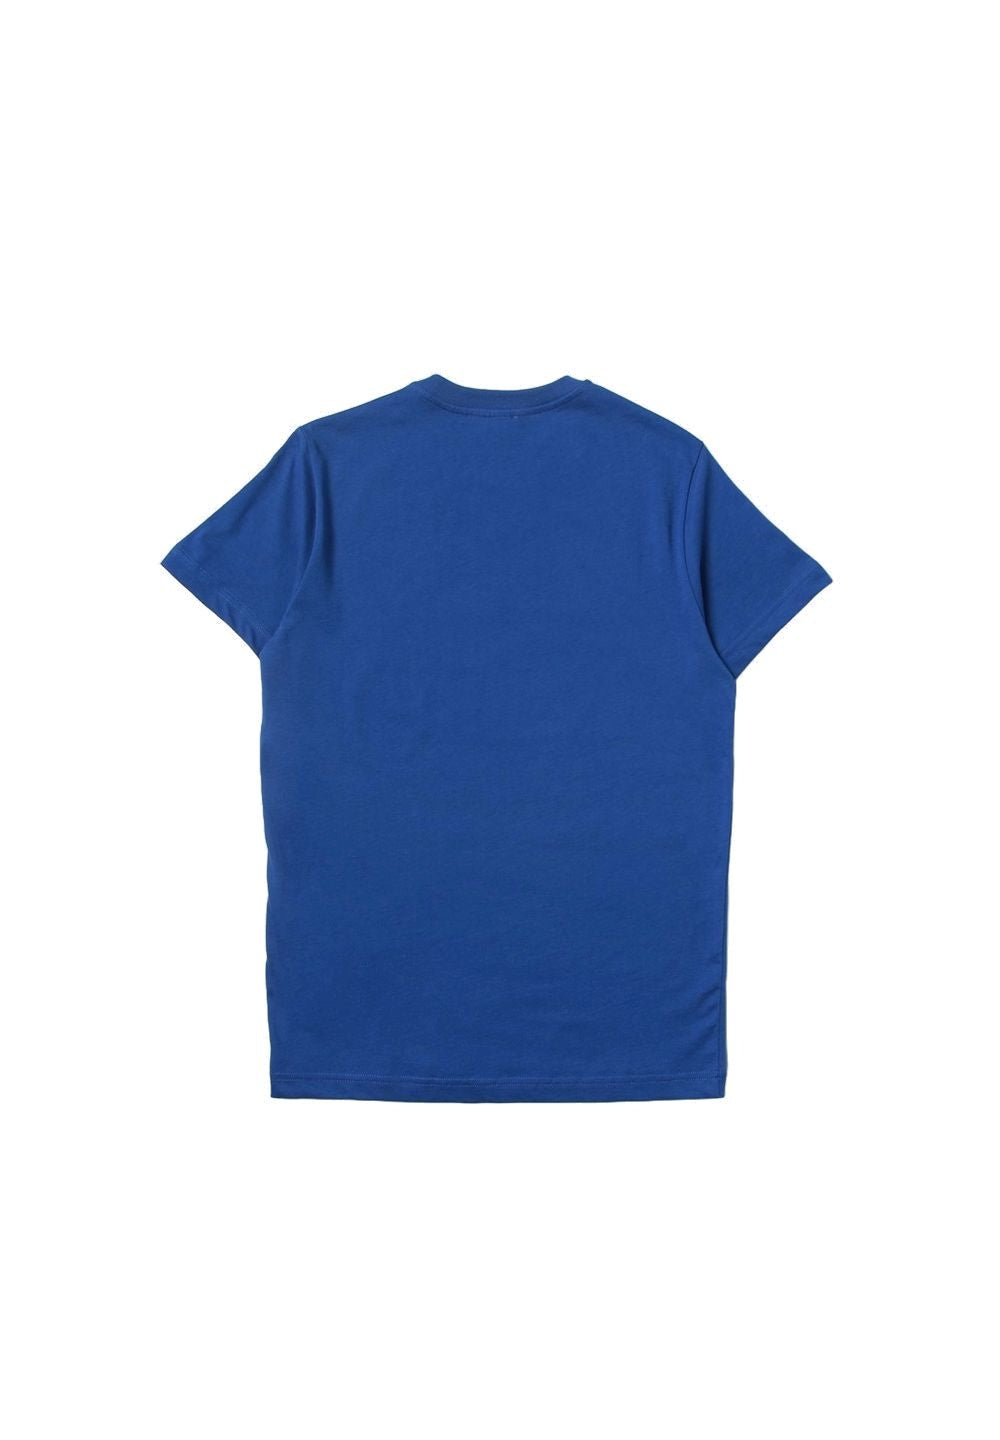 T-shirt blu per bambino - Primamoda kids